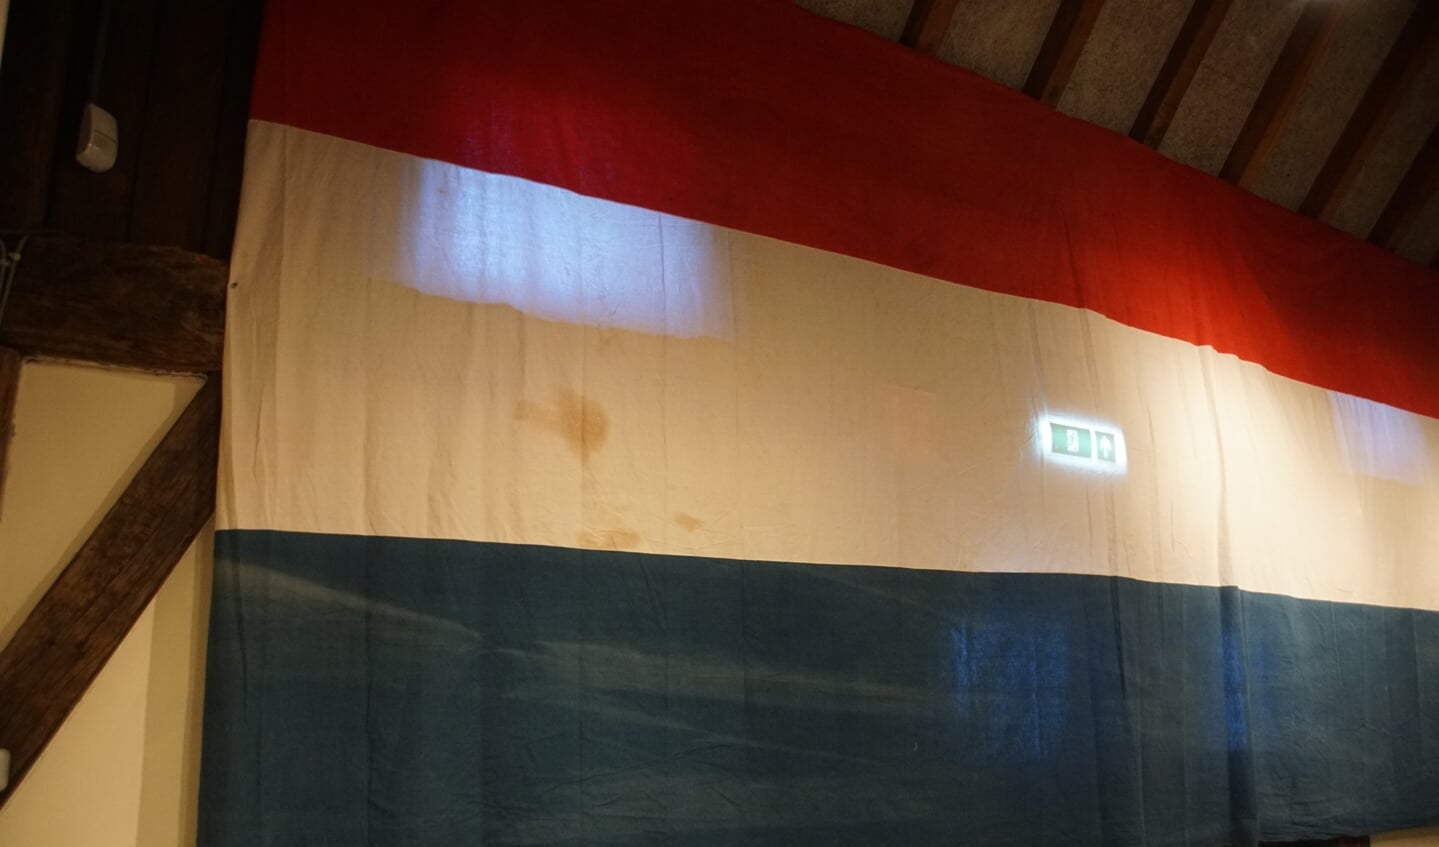 De vlag die de toren van de Dorpskerk sierde. Foto: Frank Vinkenvleugel